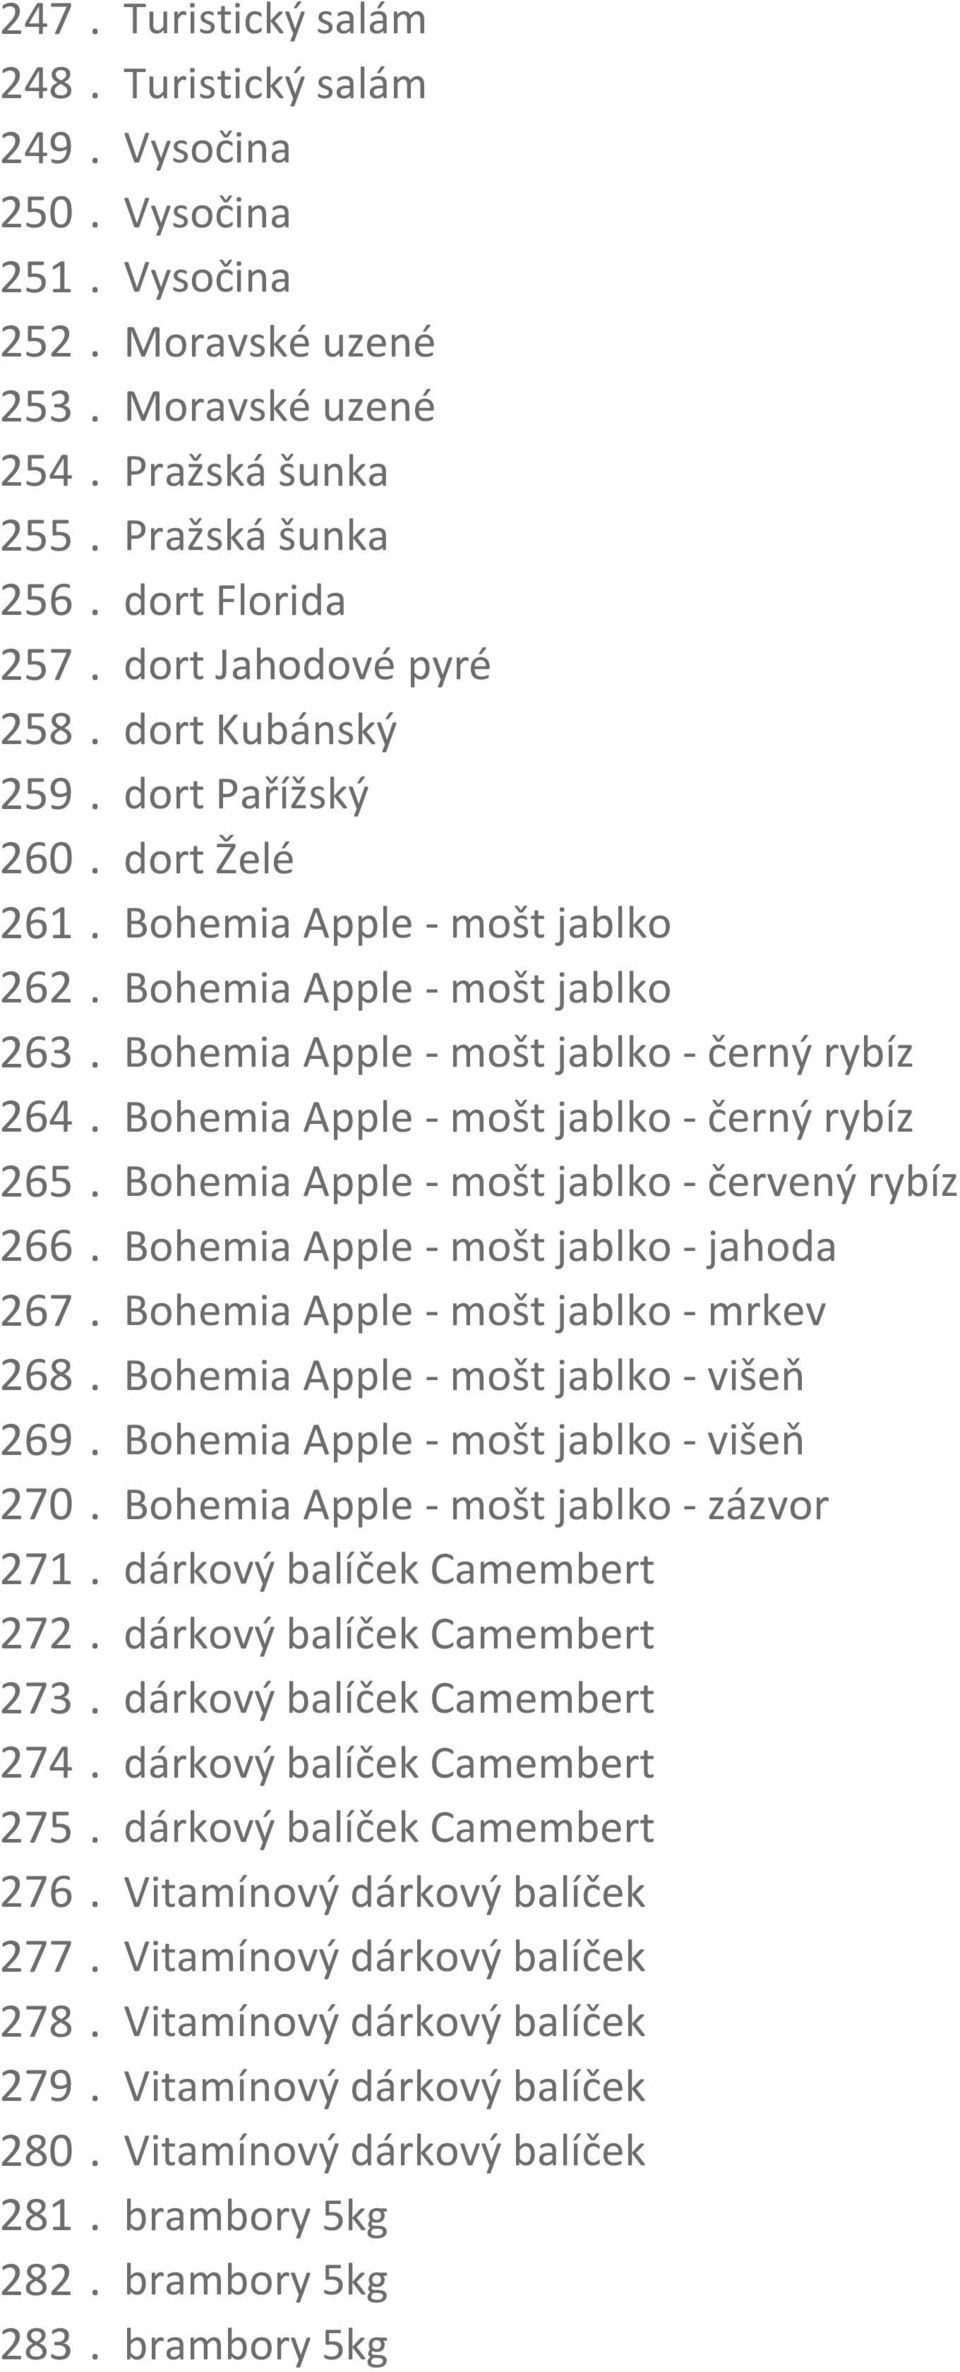 Bohemia Apple - mošt jablko - černý rybíz 265. Bohemia Apple - mošt jablko - červený rybíz 266. Bohemia Apple - mošt jablko - jahoda 267. Bohemia Apple - mošt jablko - mrkev 268.